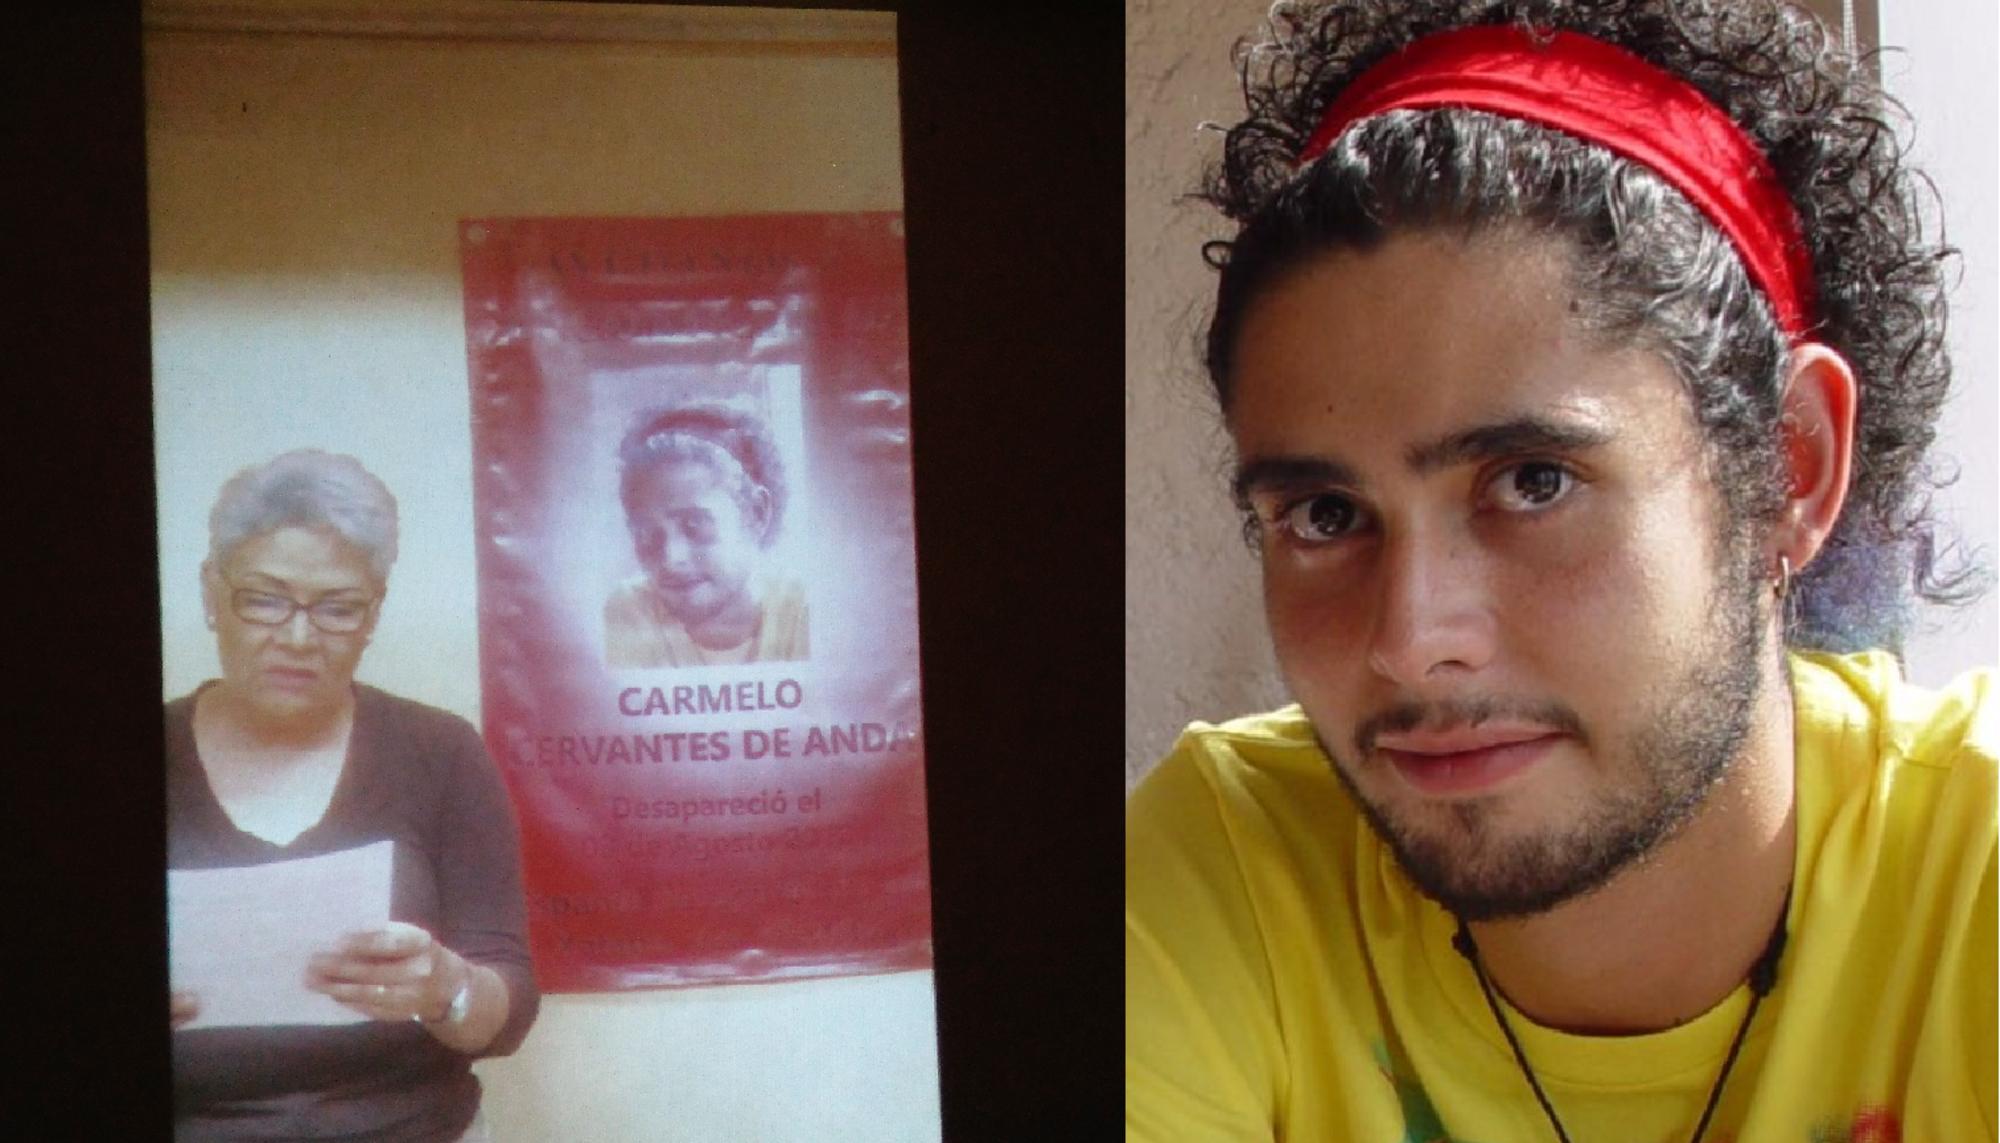 A la izq. Adela de Anda, miembro del colectivo El Solecito Veracruzano. A la dcha., Carmelo Cervantes de Anda, desaparecido en Xalapa, Veracruz en 2012